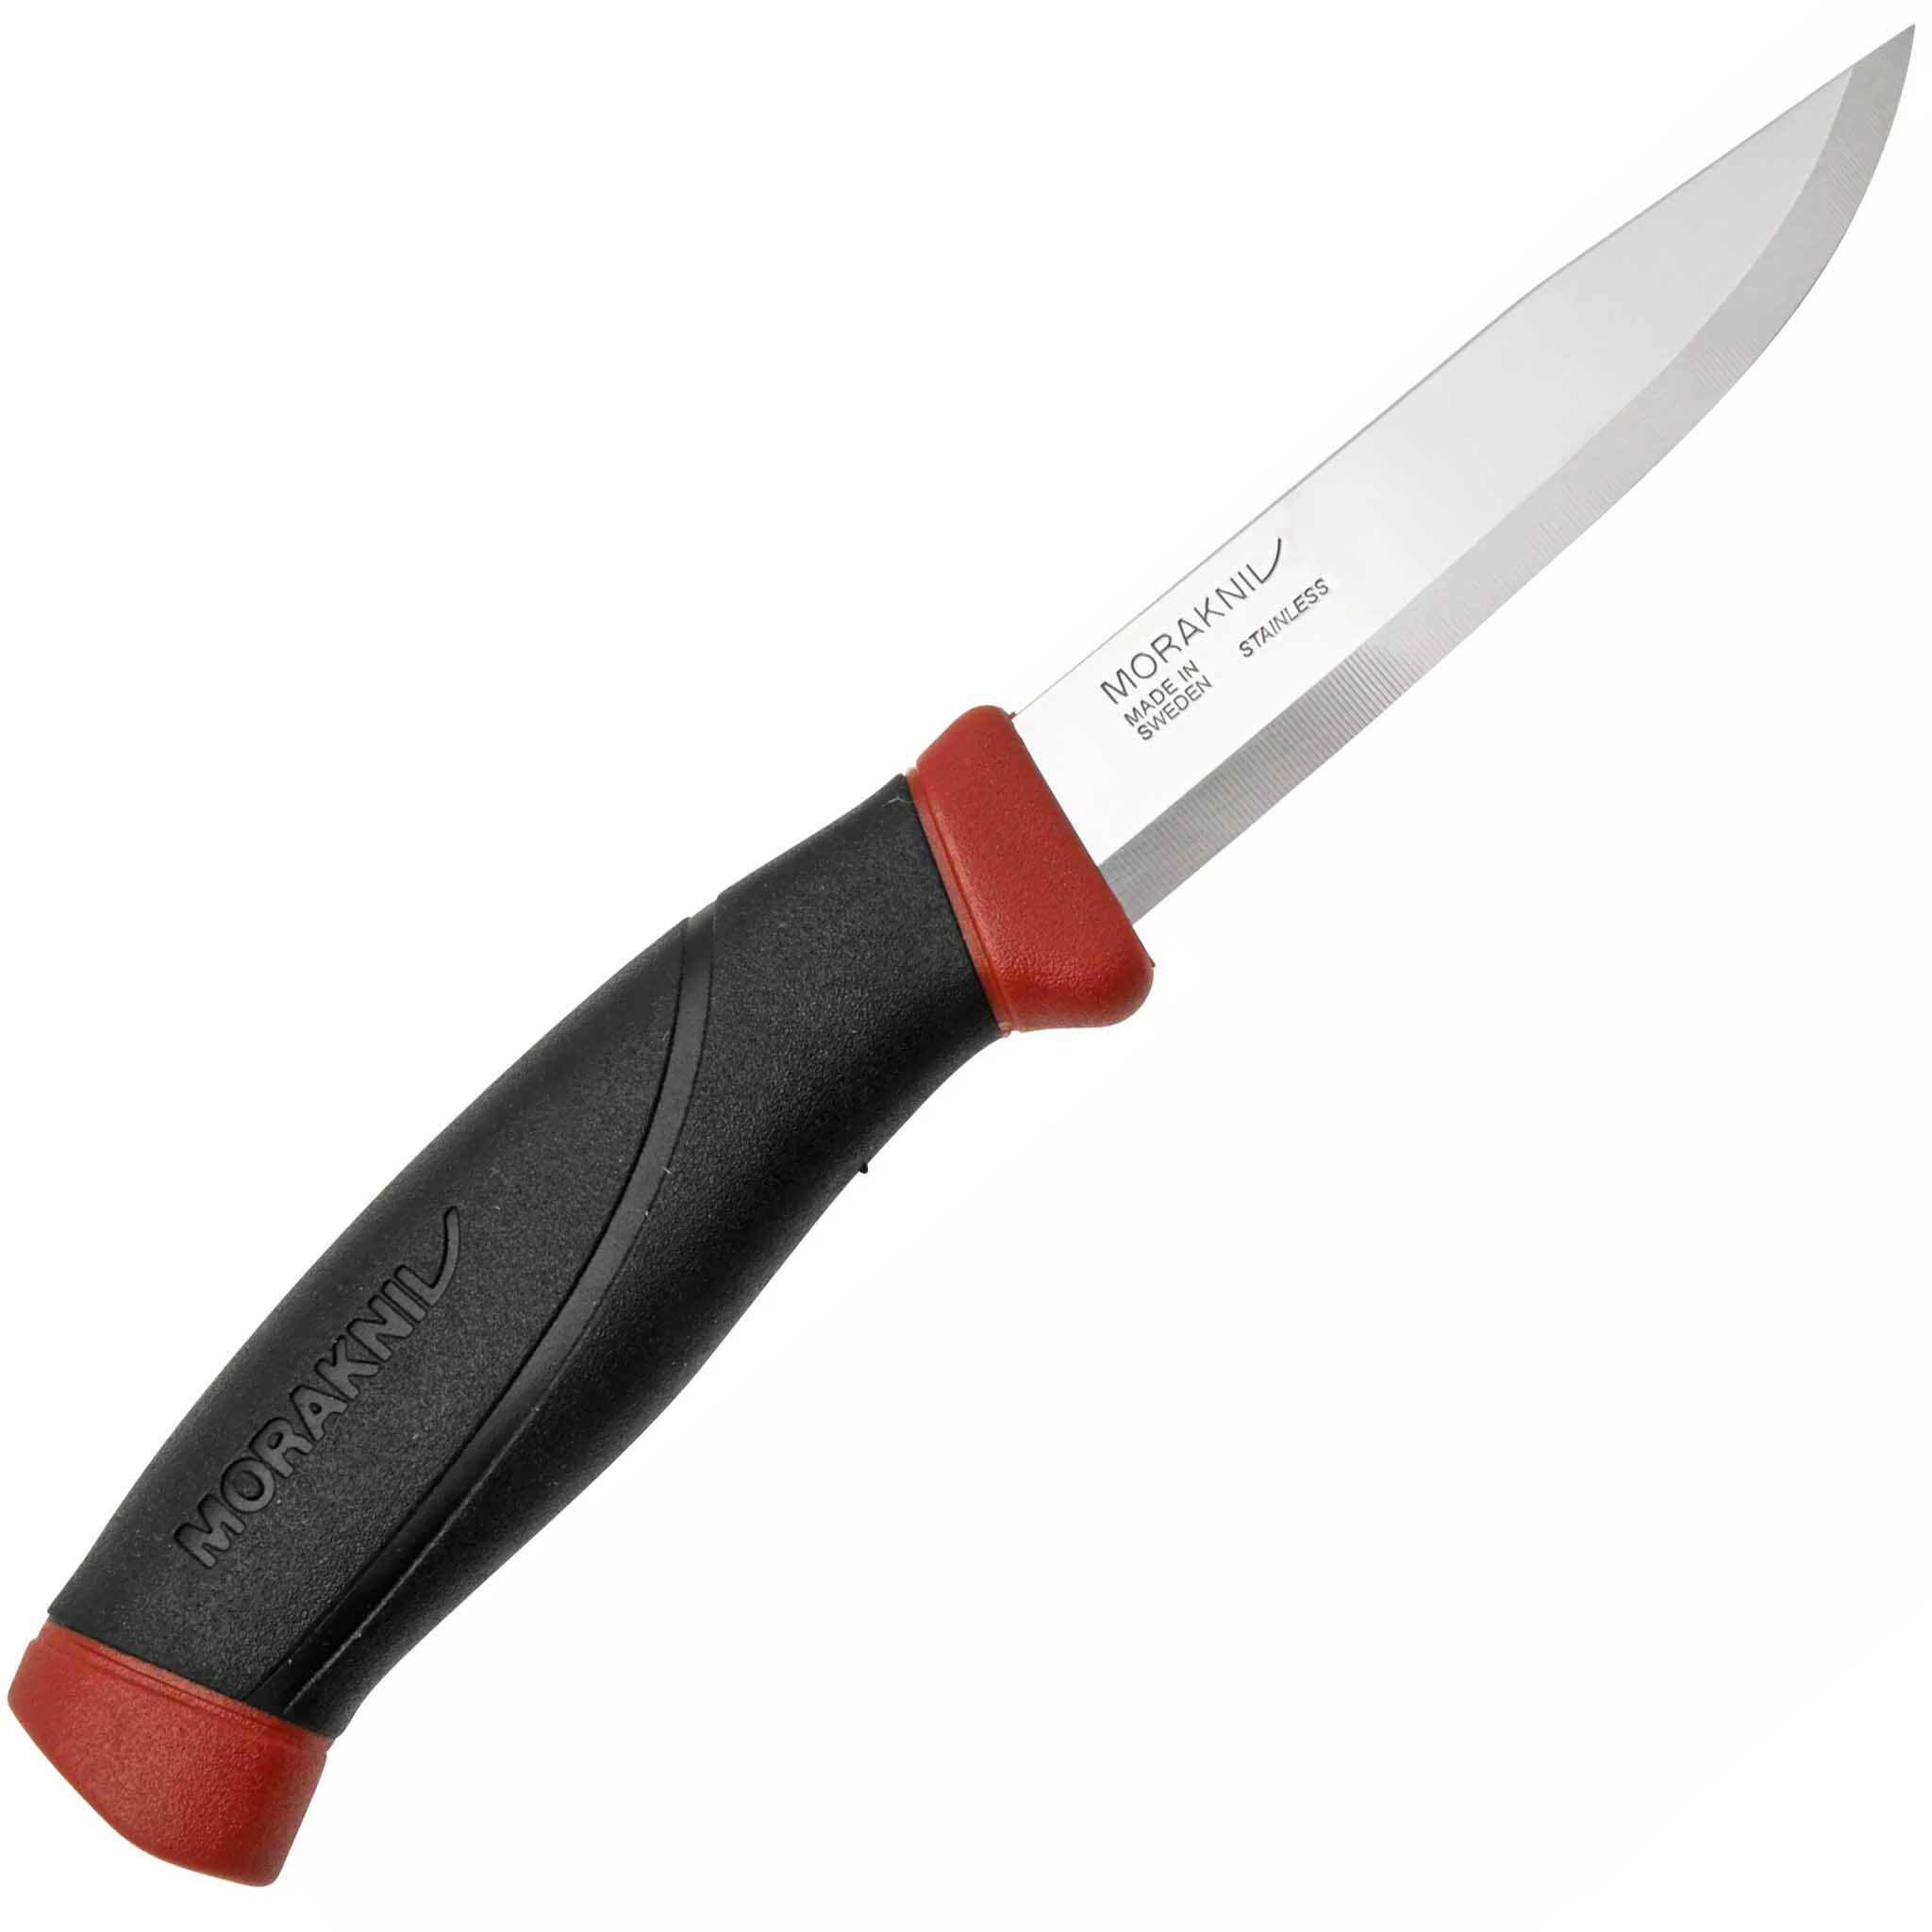 Нож с фиксированным лезвием Morakniv Companion, сталь Sandvik 12C27, рукоять резина, Dala red - фото 2